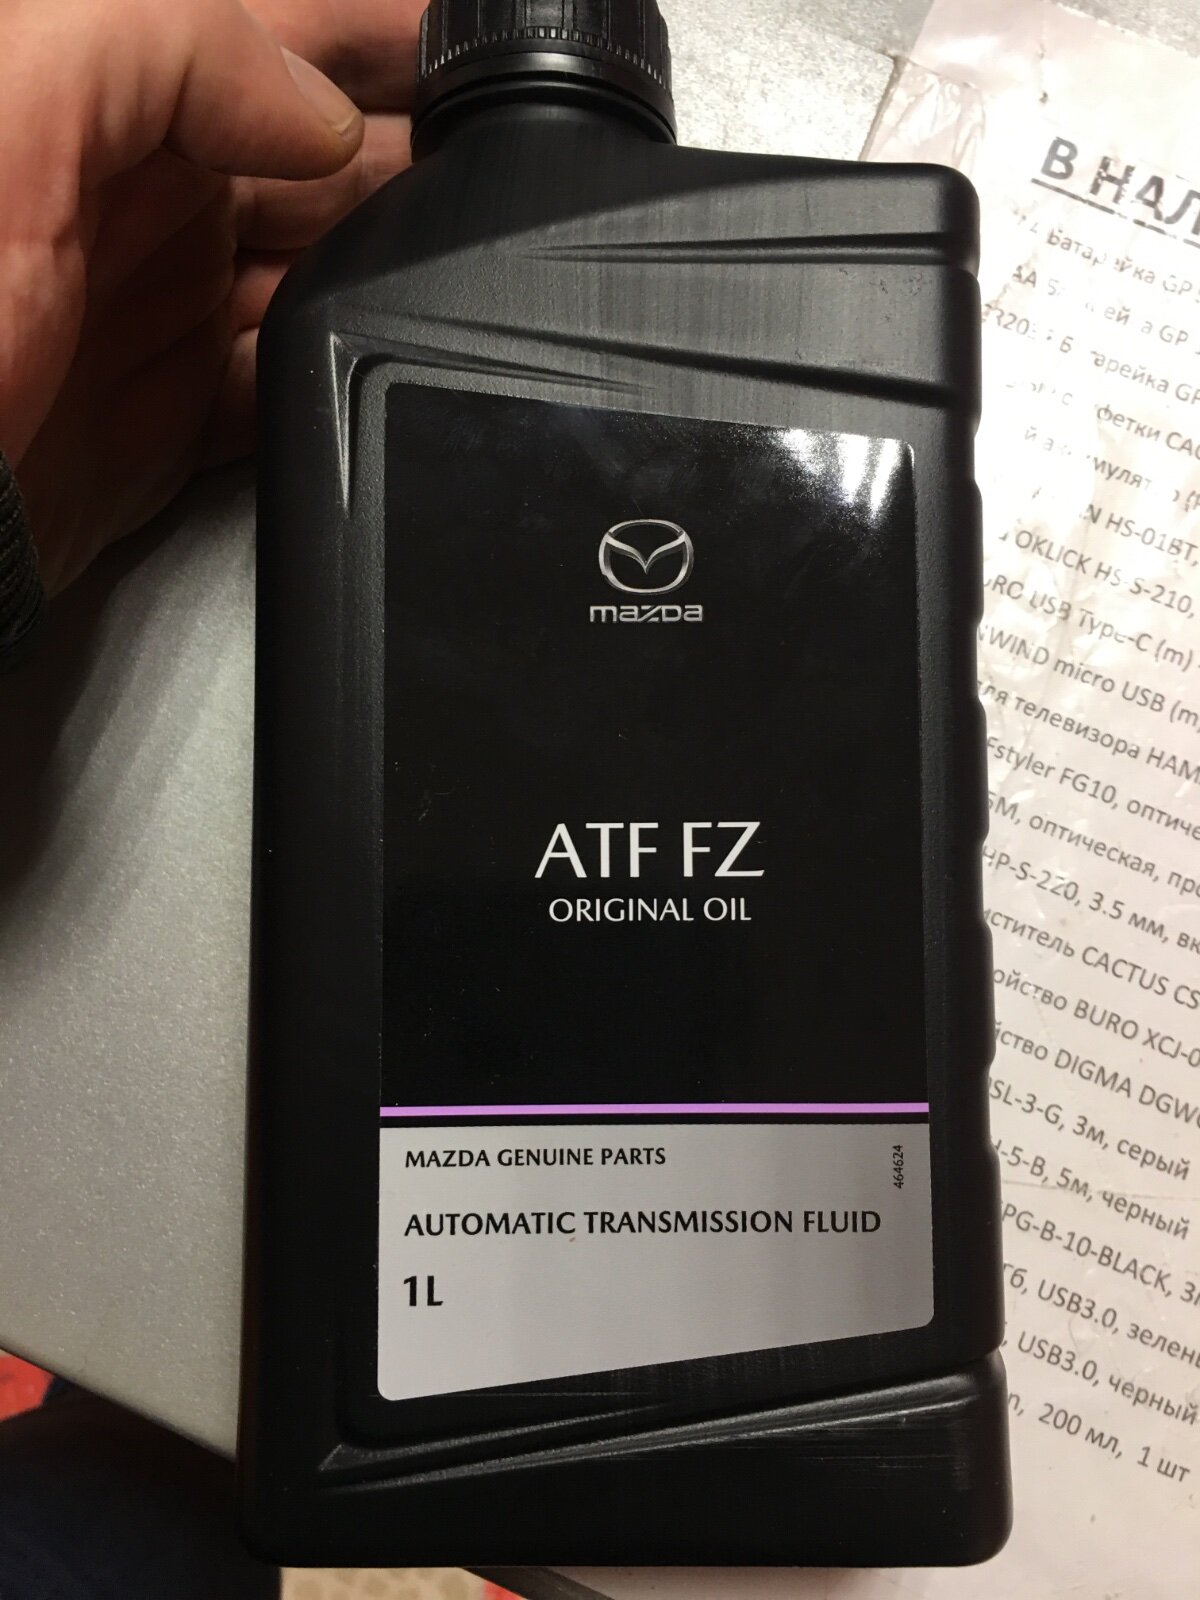 Atf fz купить. Mazda ATF FZ. ATF FZ Mazda аналоги. Mazda Original Oil ATF FZ. Mazda ATF FZ цвет.